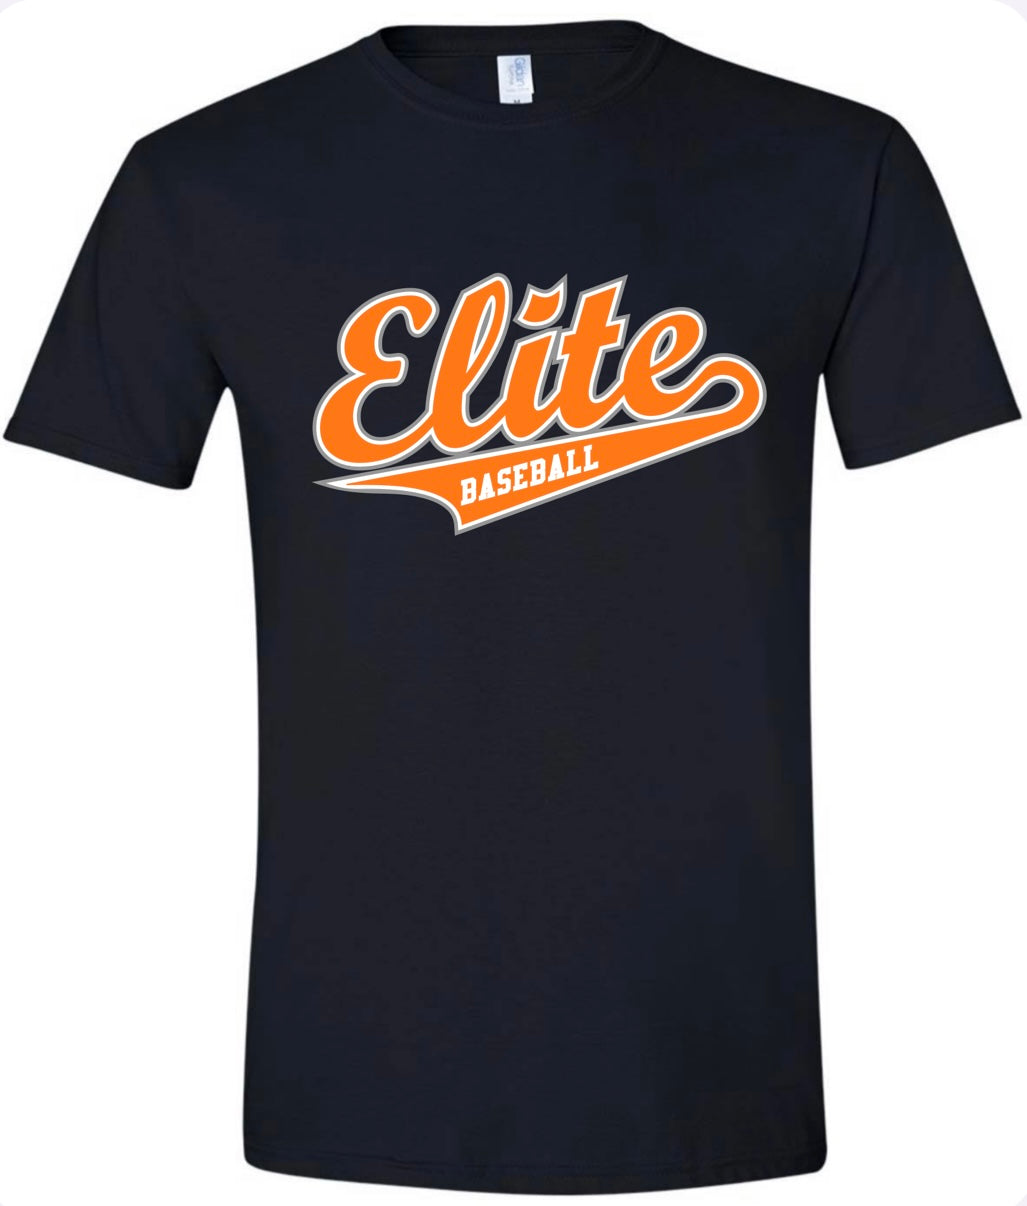 Elite Baseball Tshirt